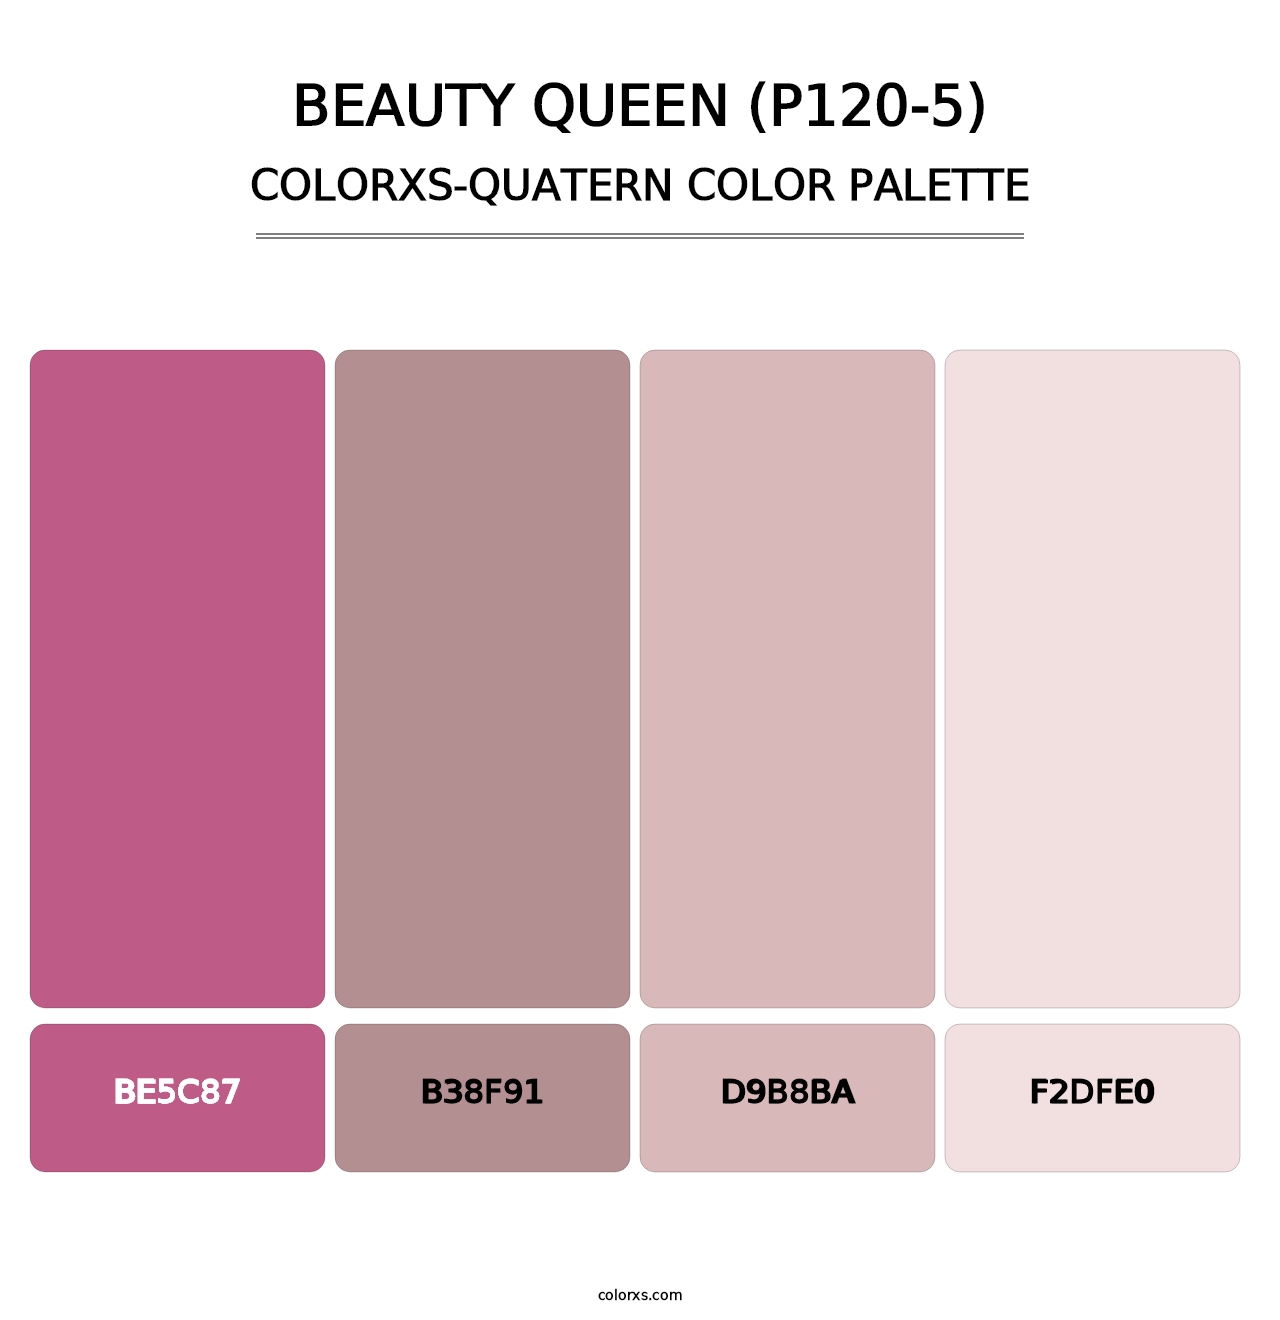 Beauty Queen (P120-5) - Colorxs Quatern Palette